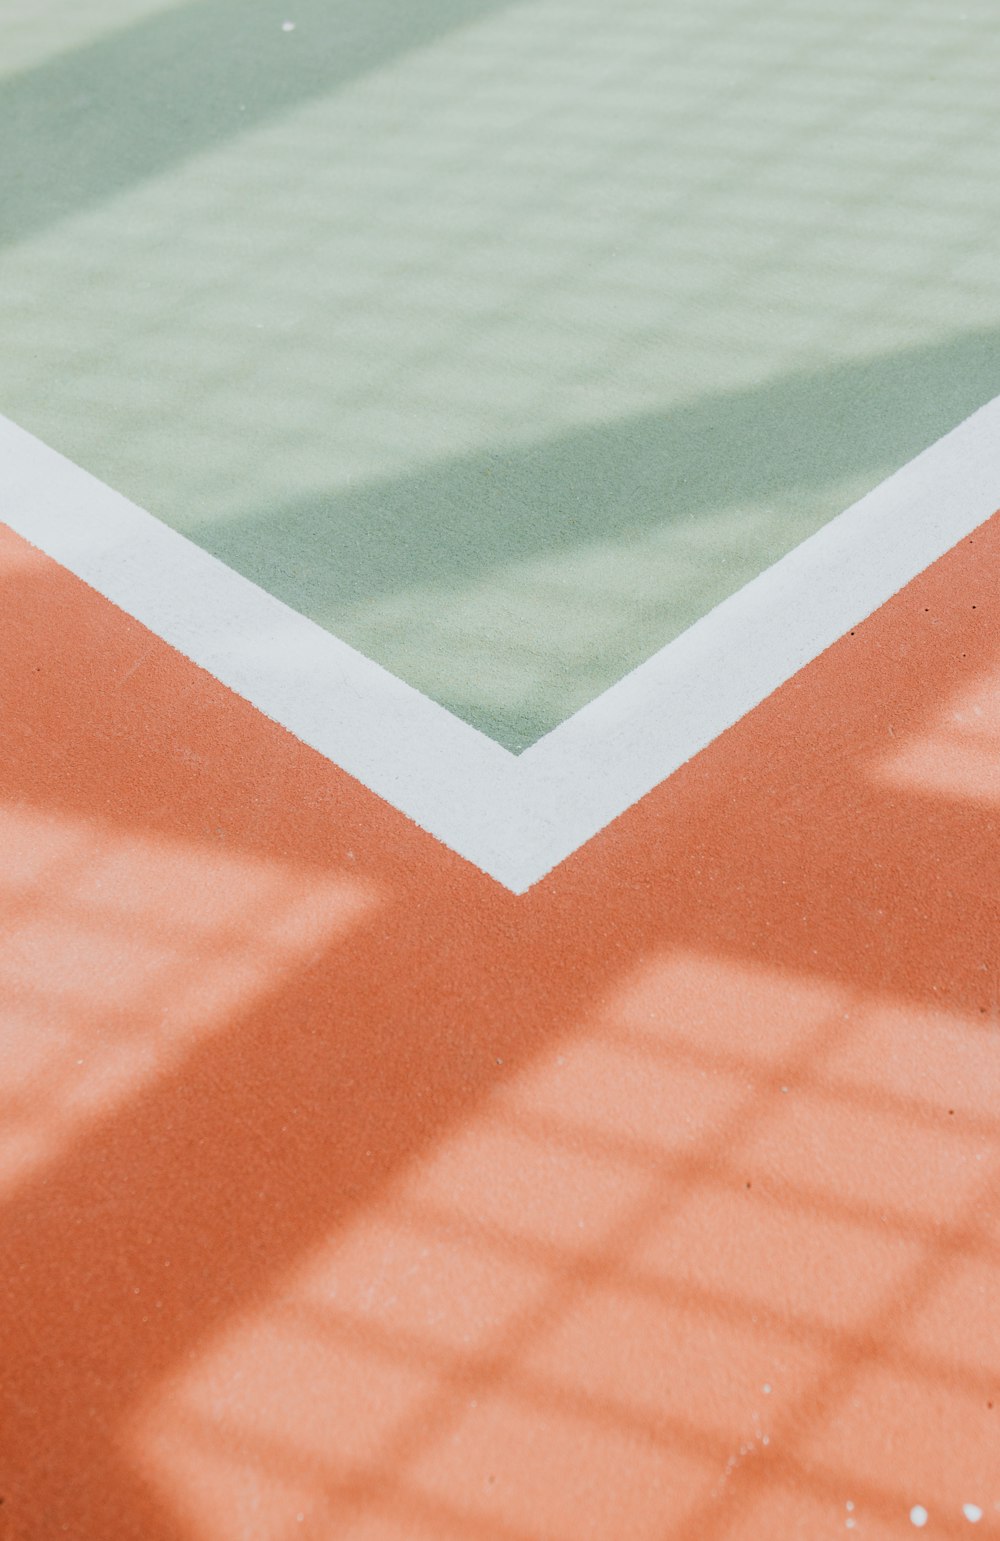 La sombra de un jugador de tenis en una cancha de tenis